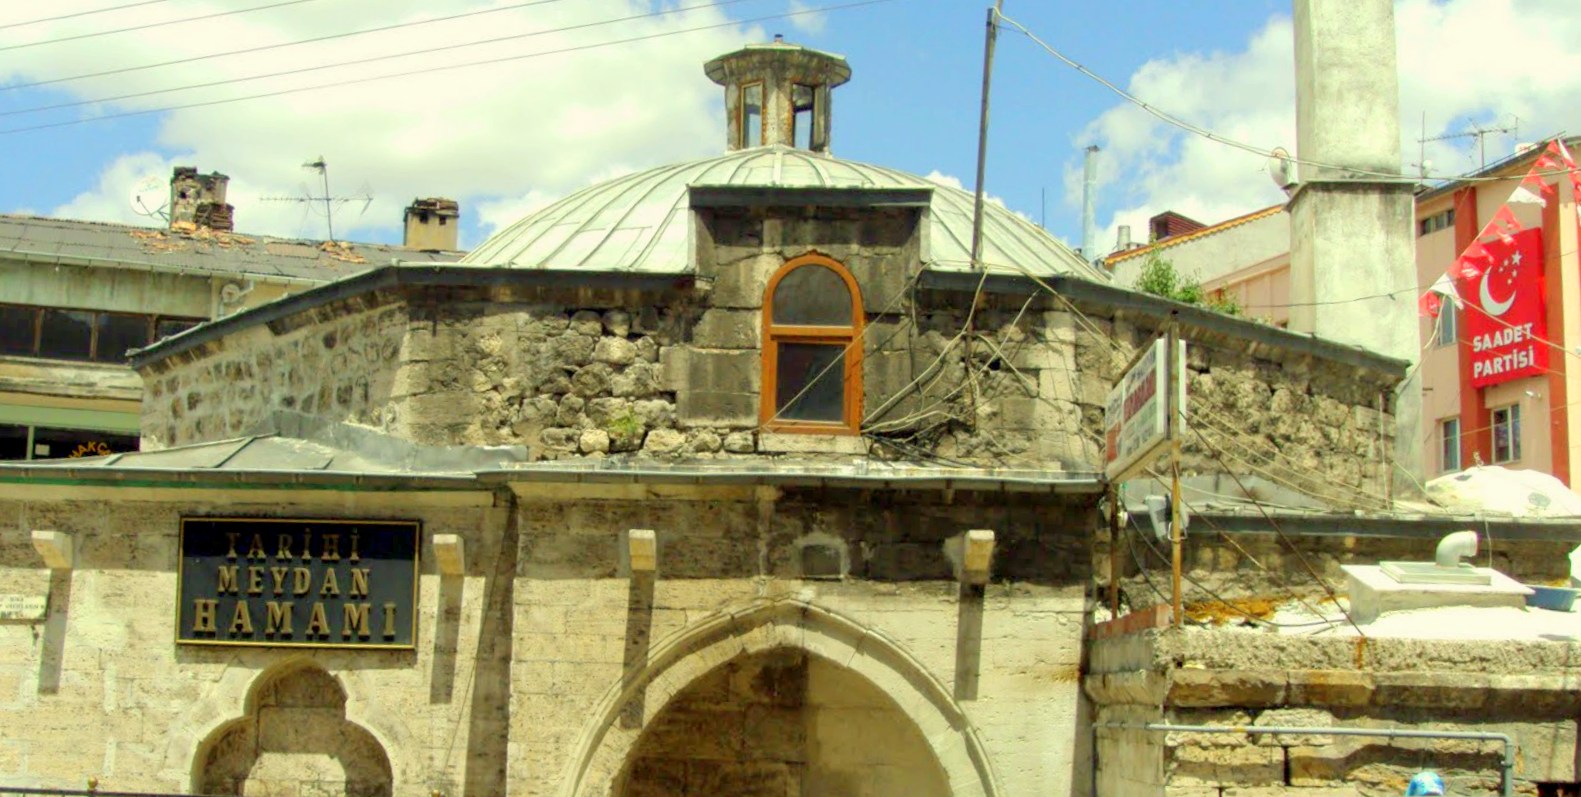 Sivas historic square bath